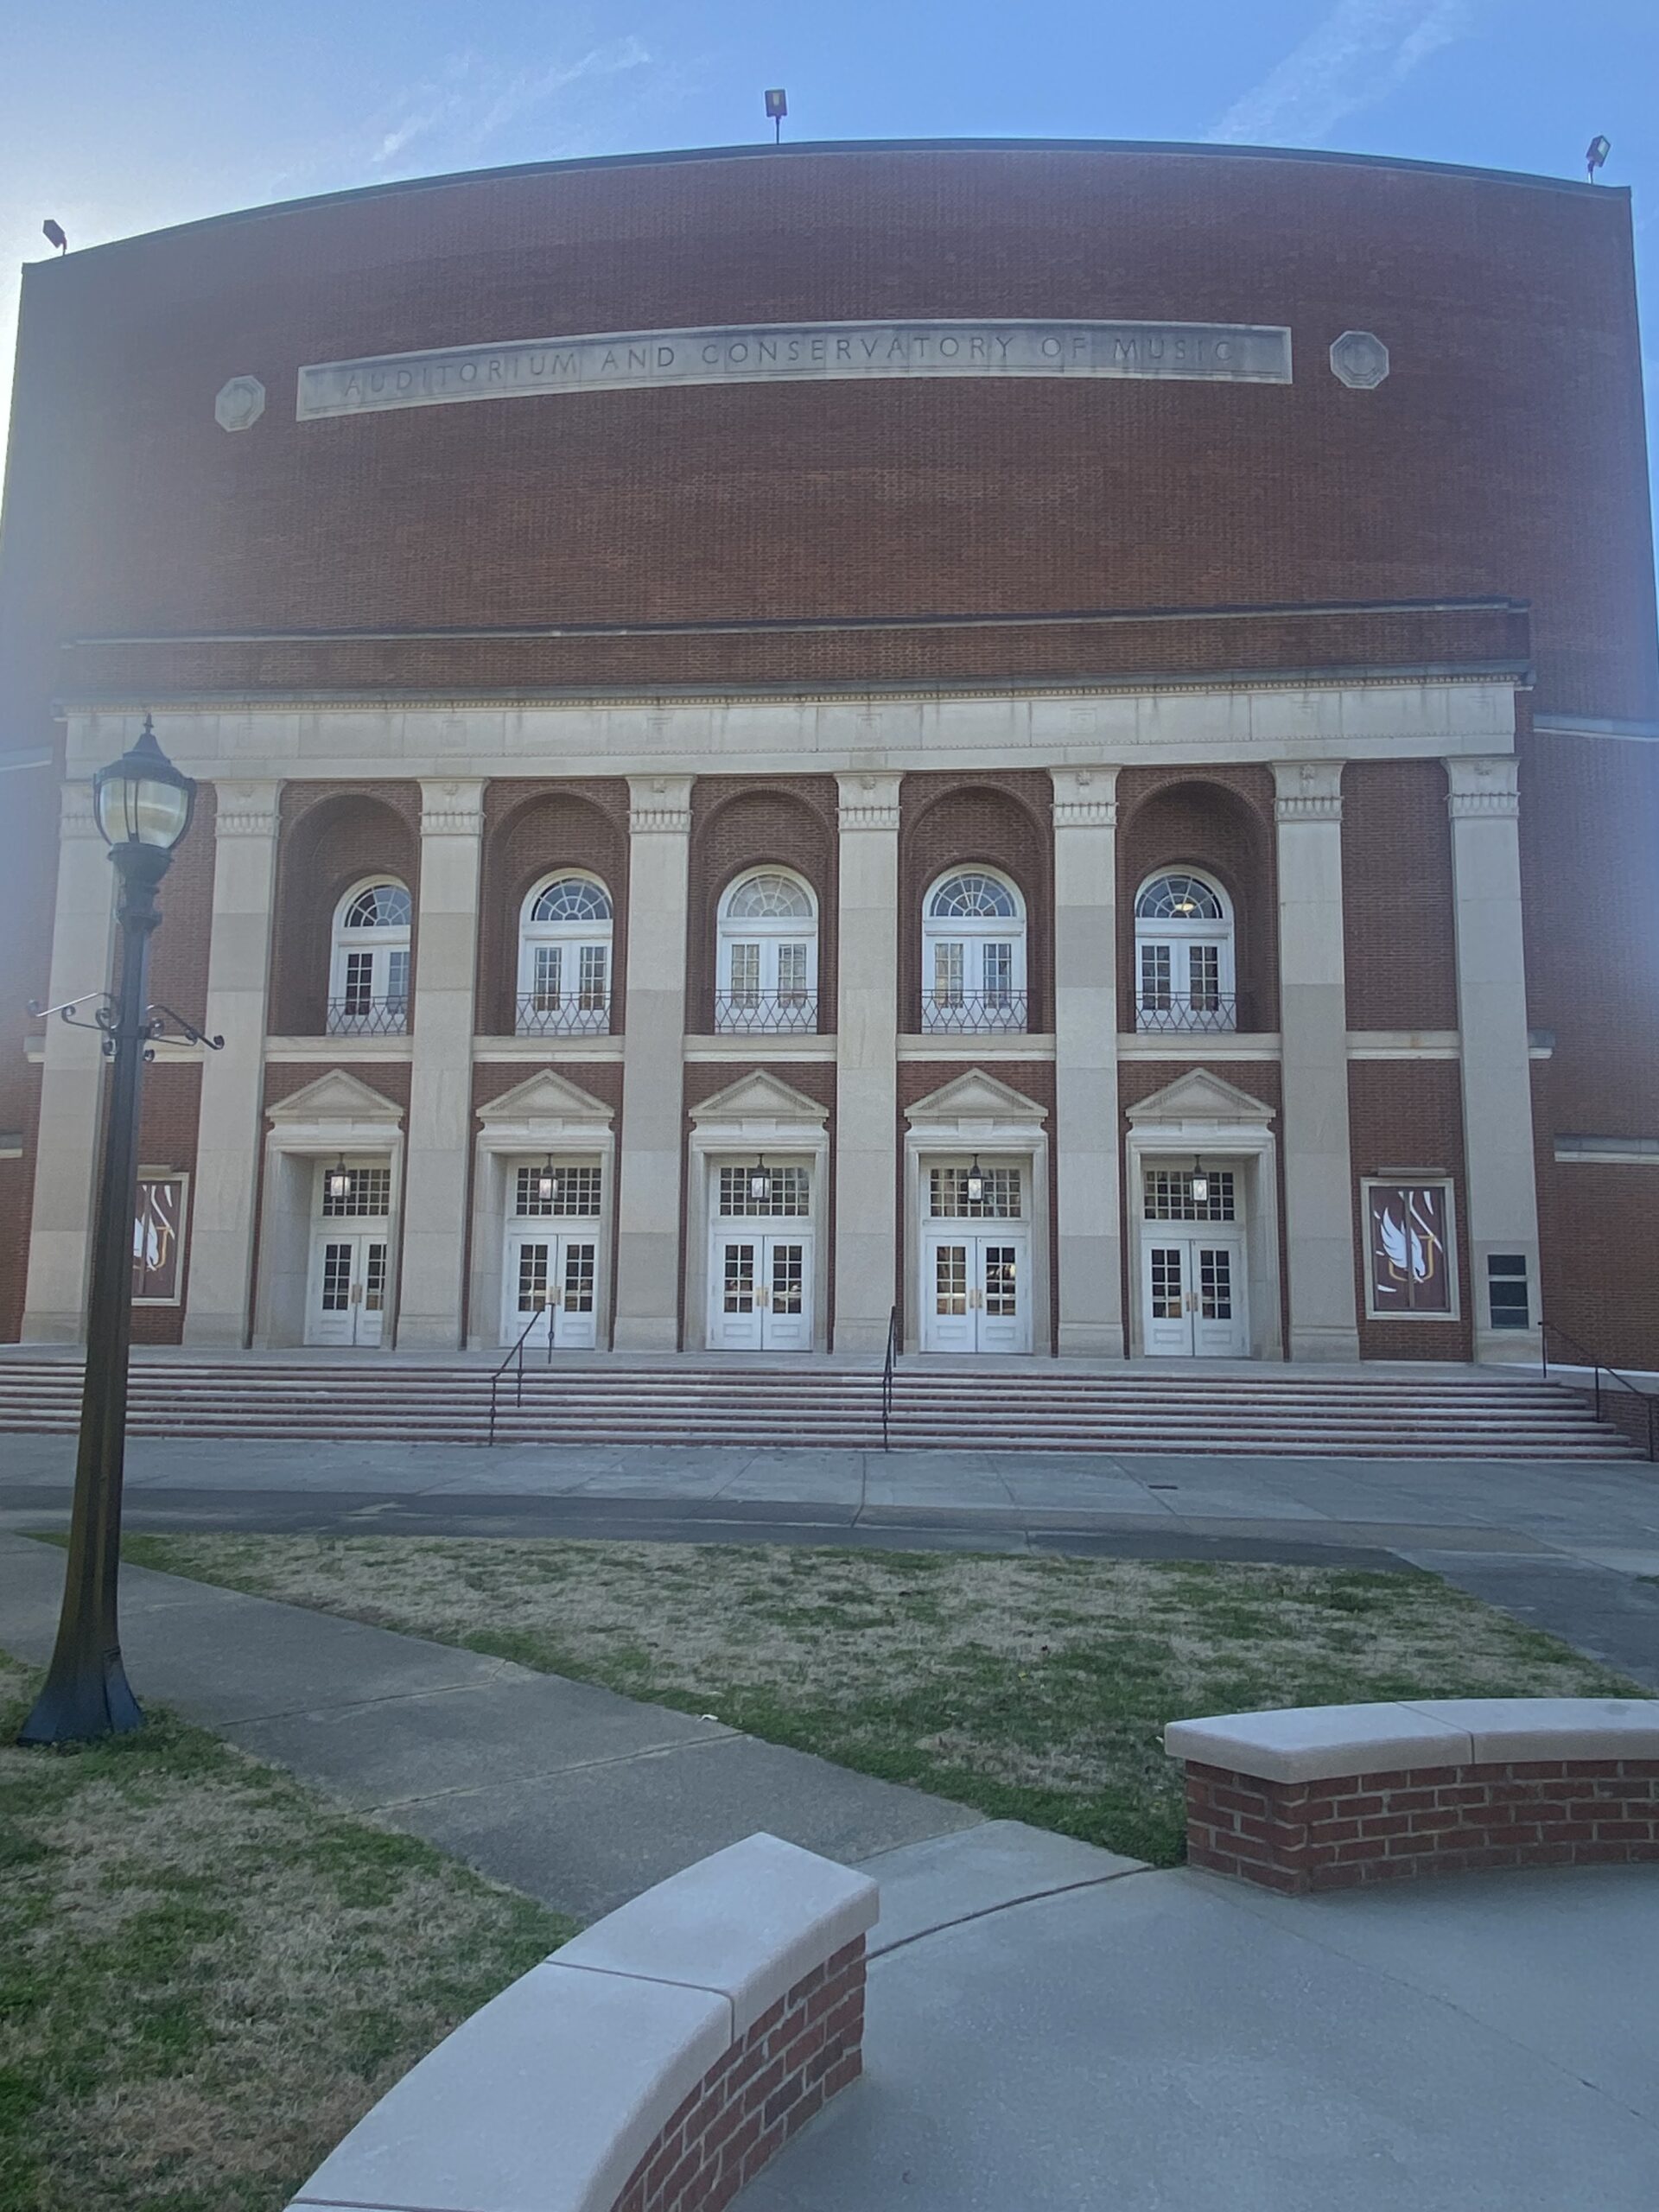 Music Auditorium located at Winthrop University.